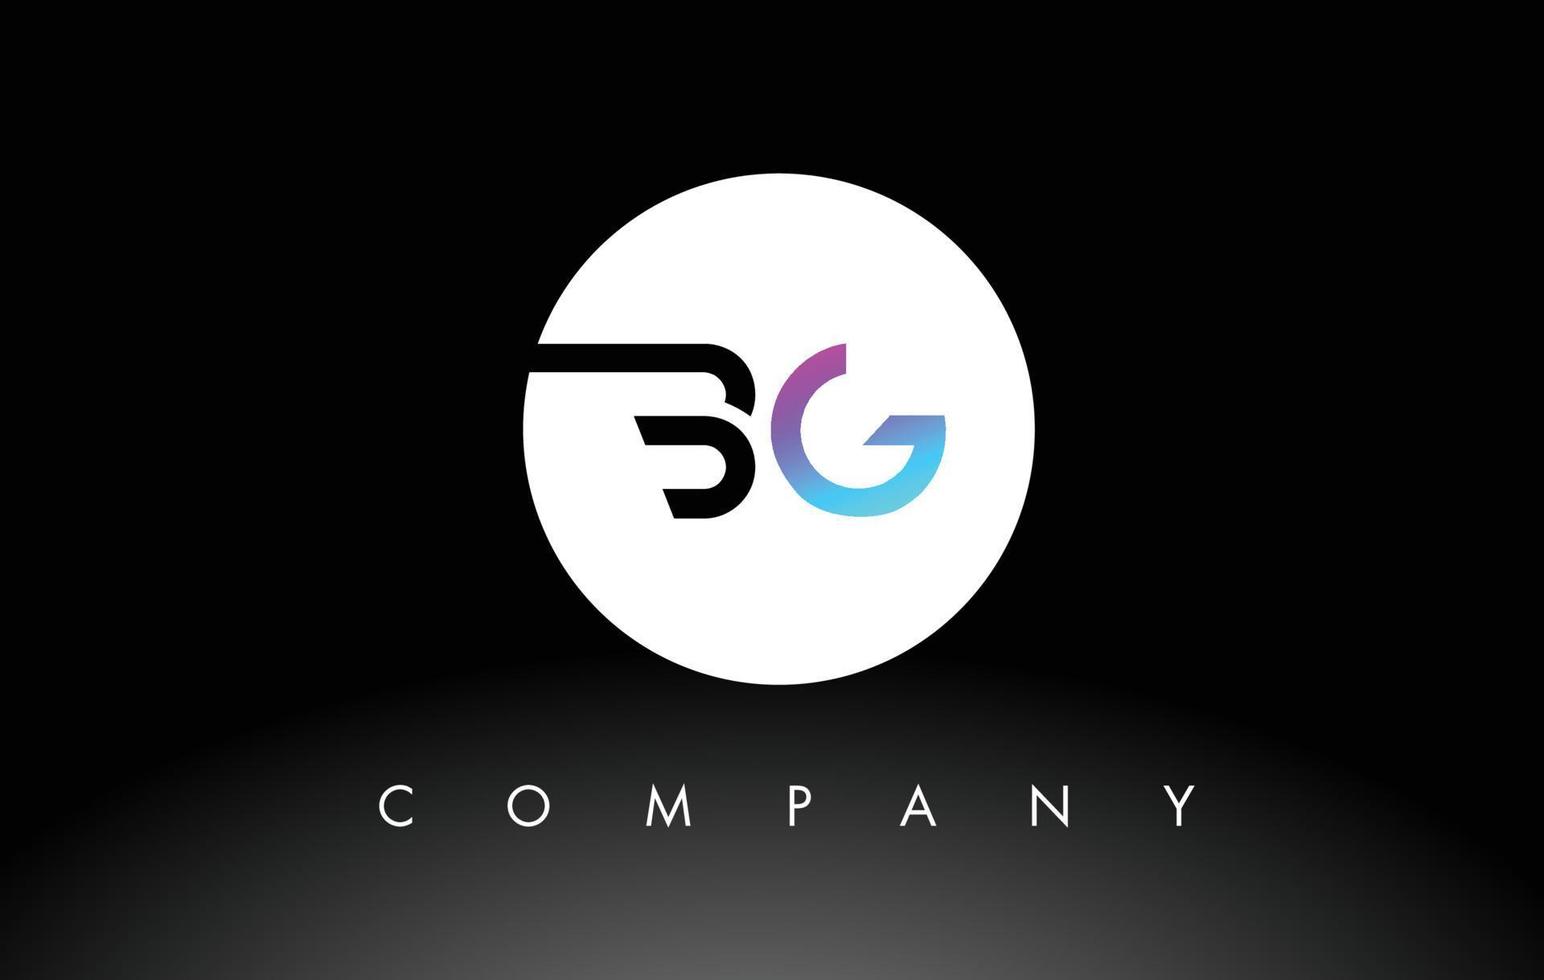 logo bg nero viola. vettore di disegno della lettera.